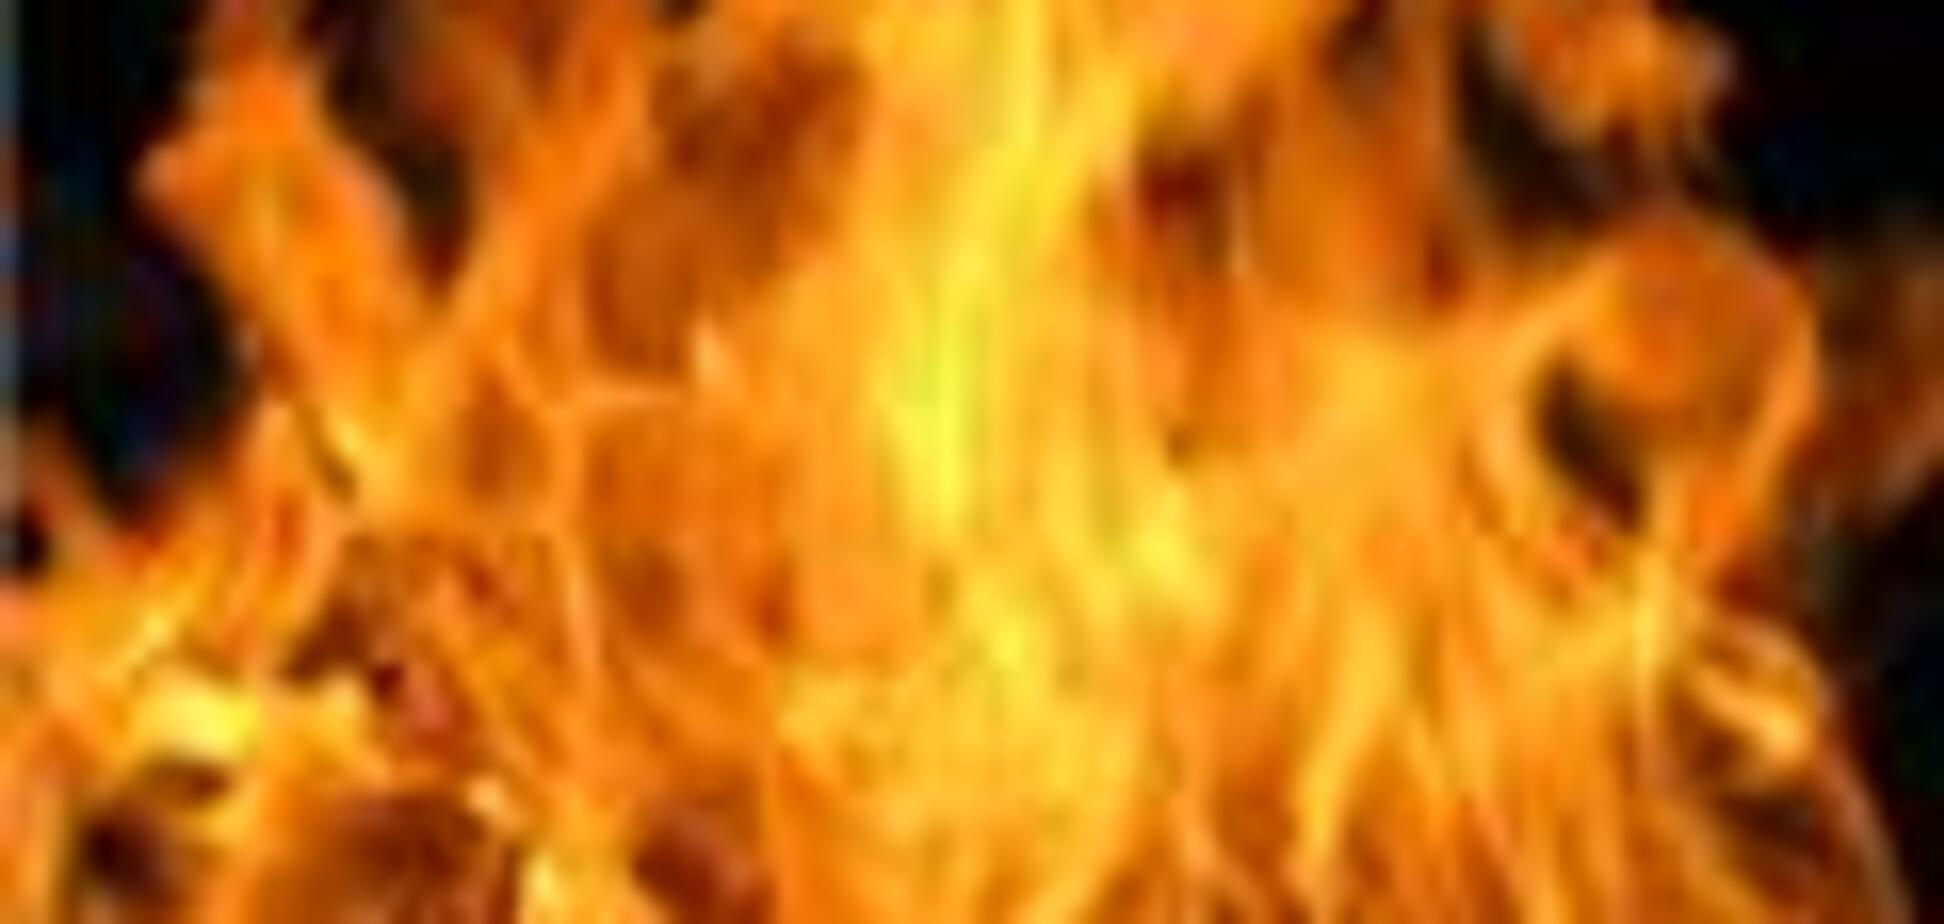 В Ростове-на-Дону сгорел дом, один человек погиб